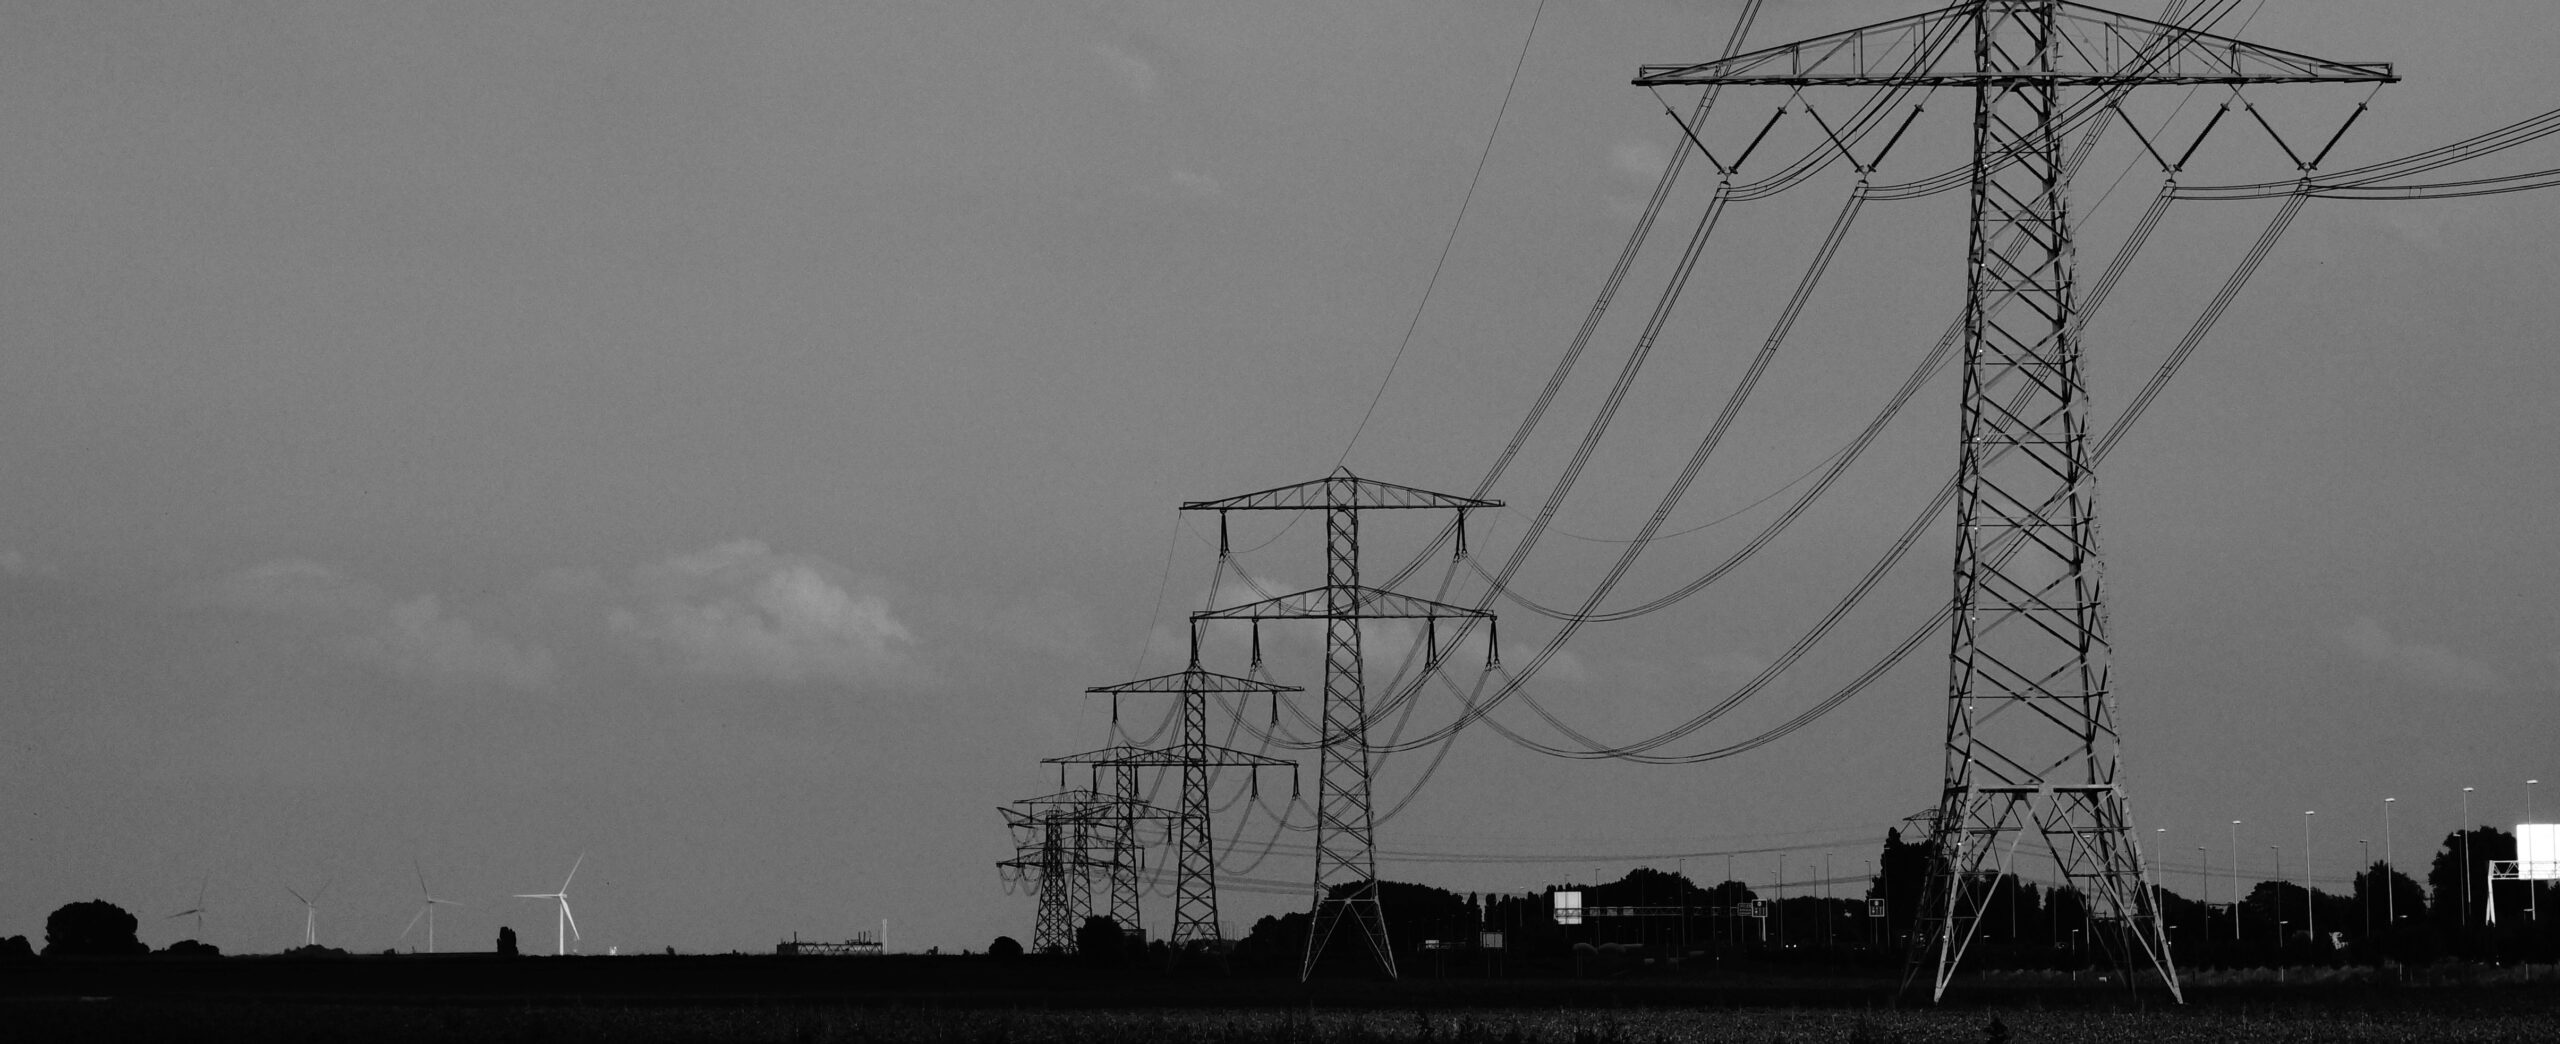 Concern over transmission lines